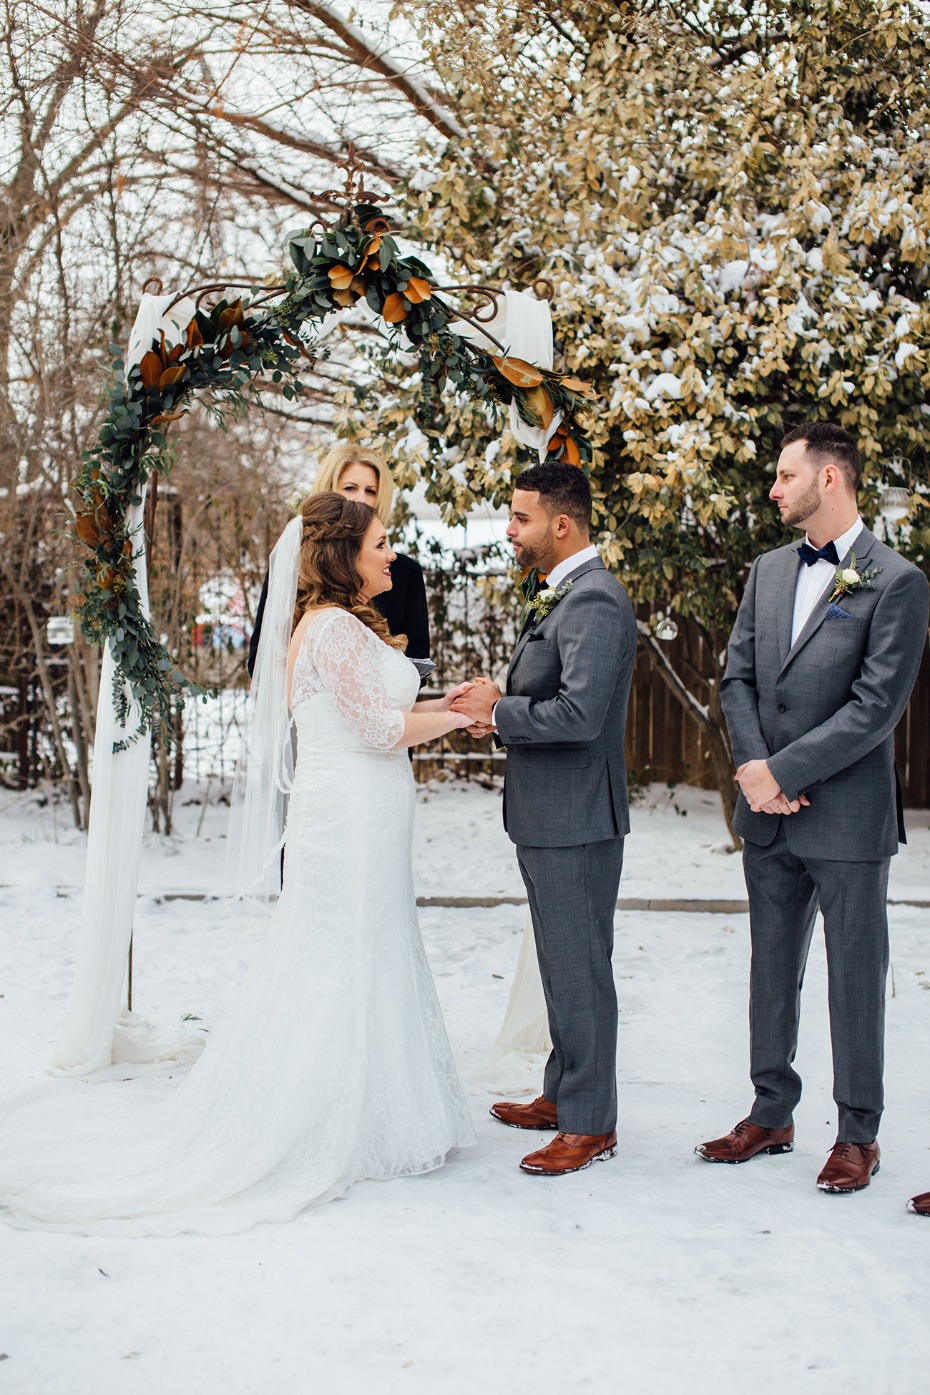 Outdoor winter wedding